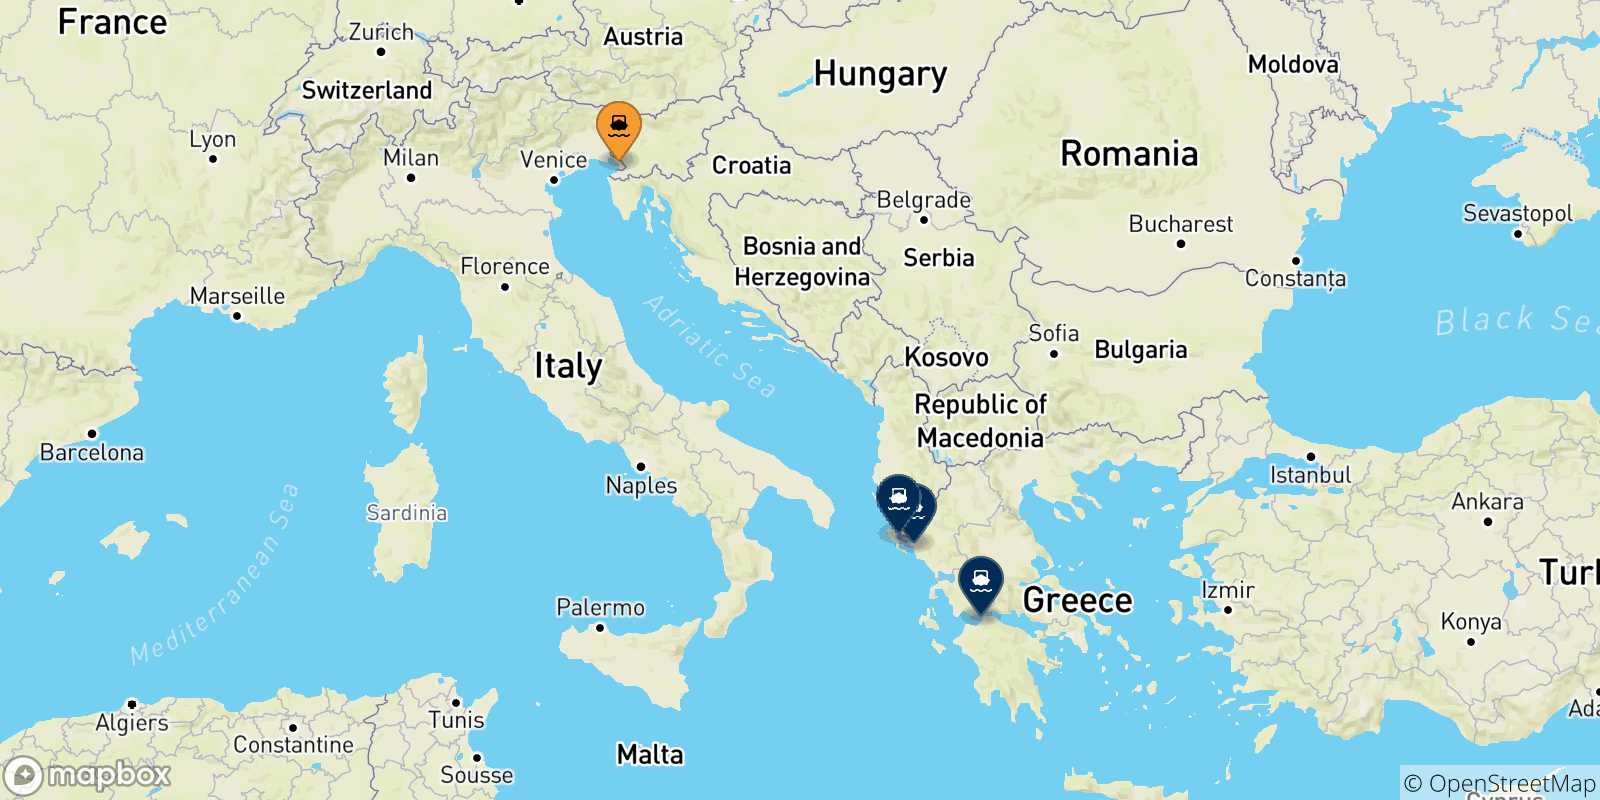 Mappa delle possibili rotte tra Trieste e la Grecia